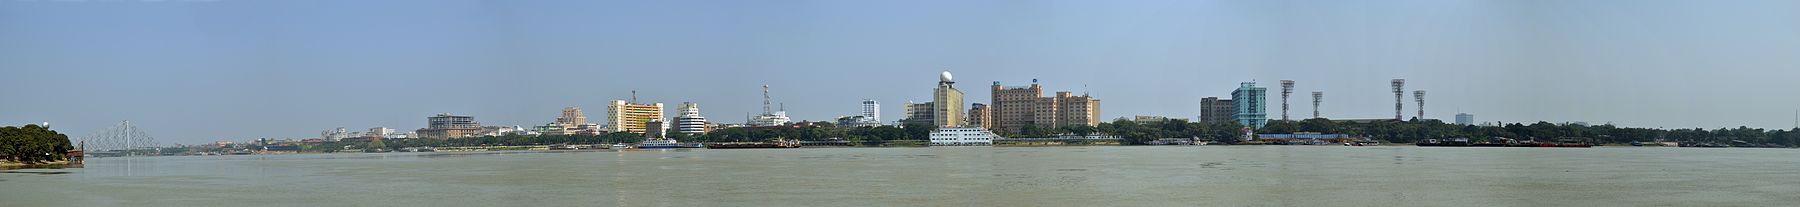 Panorama de la ciudad con el río Hooghly.